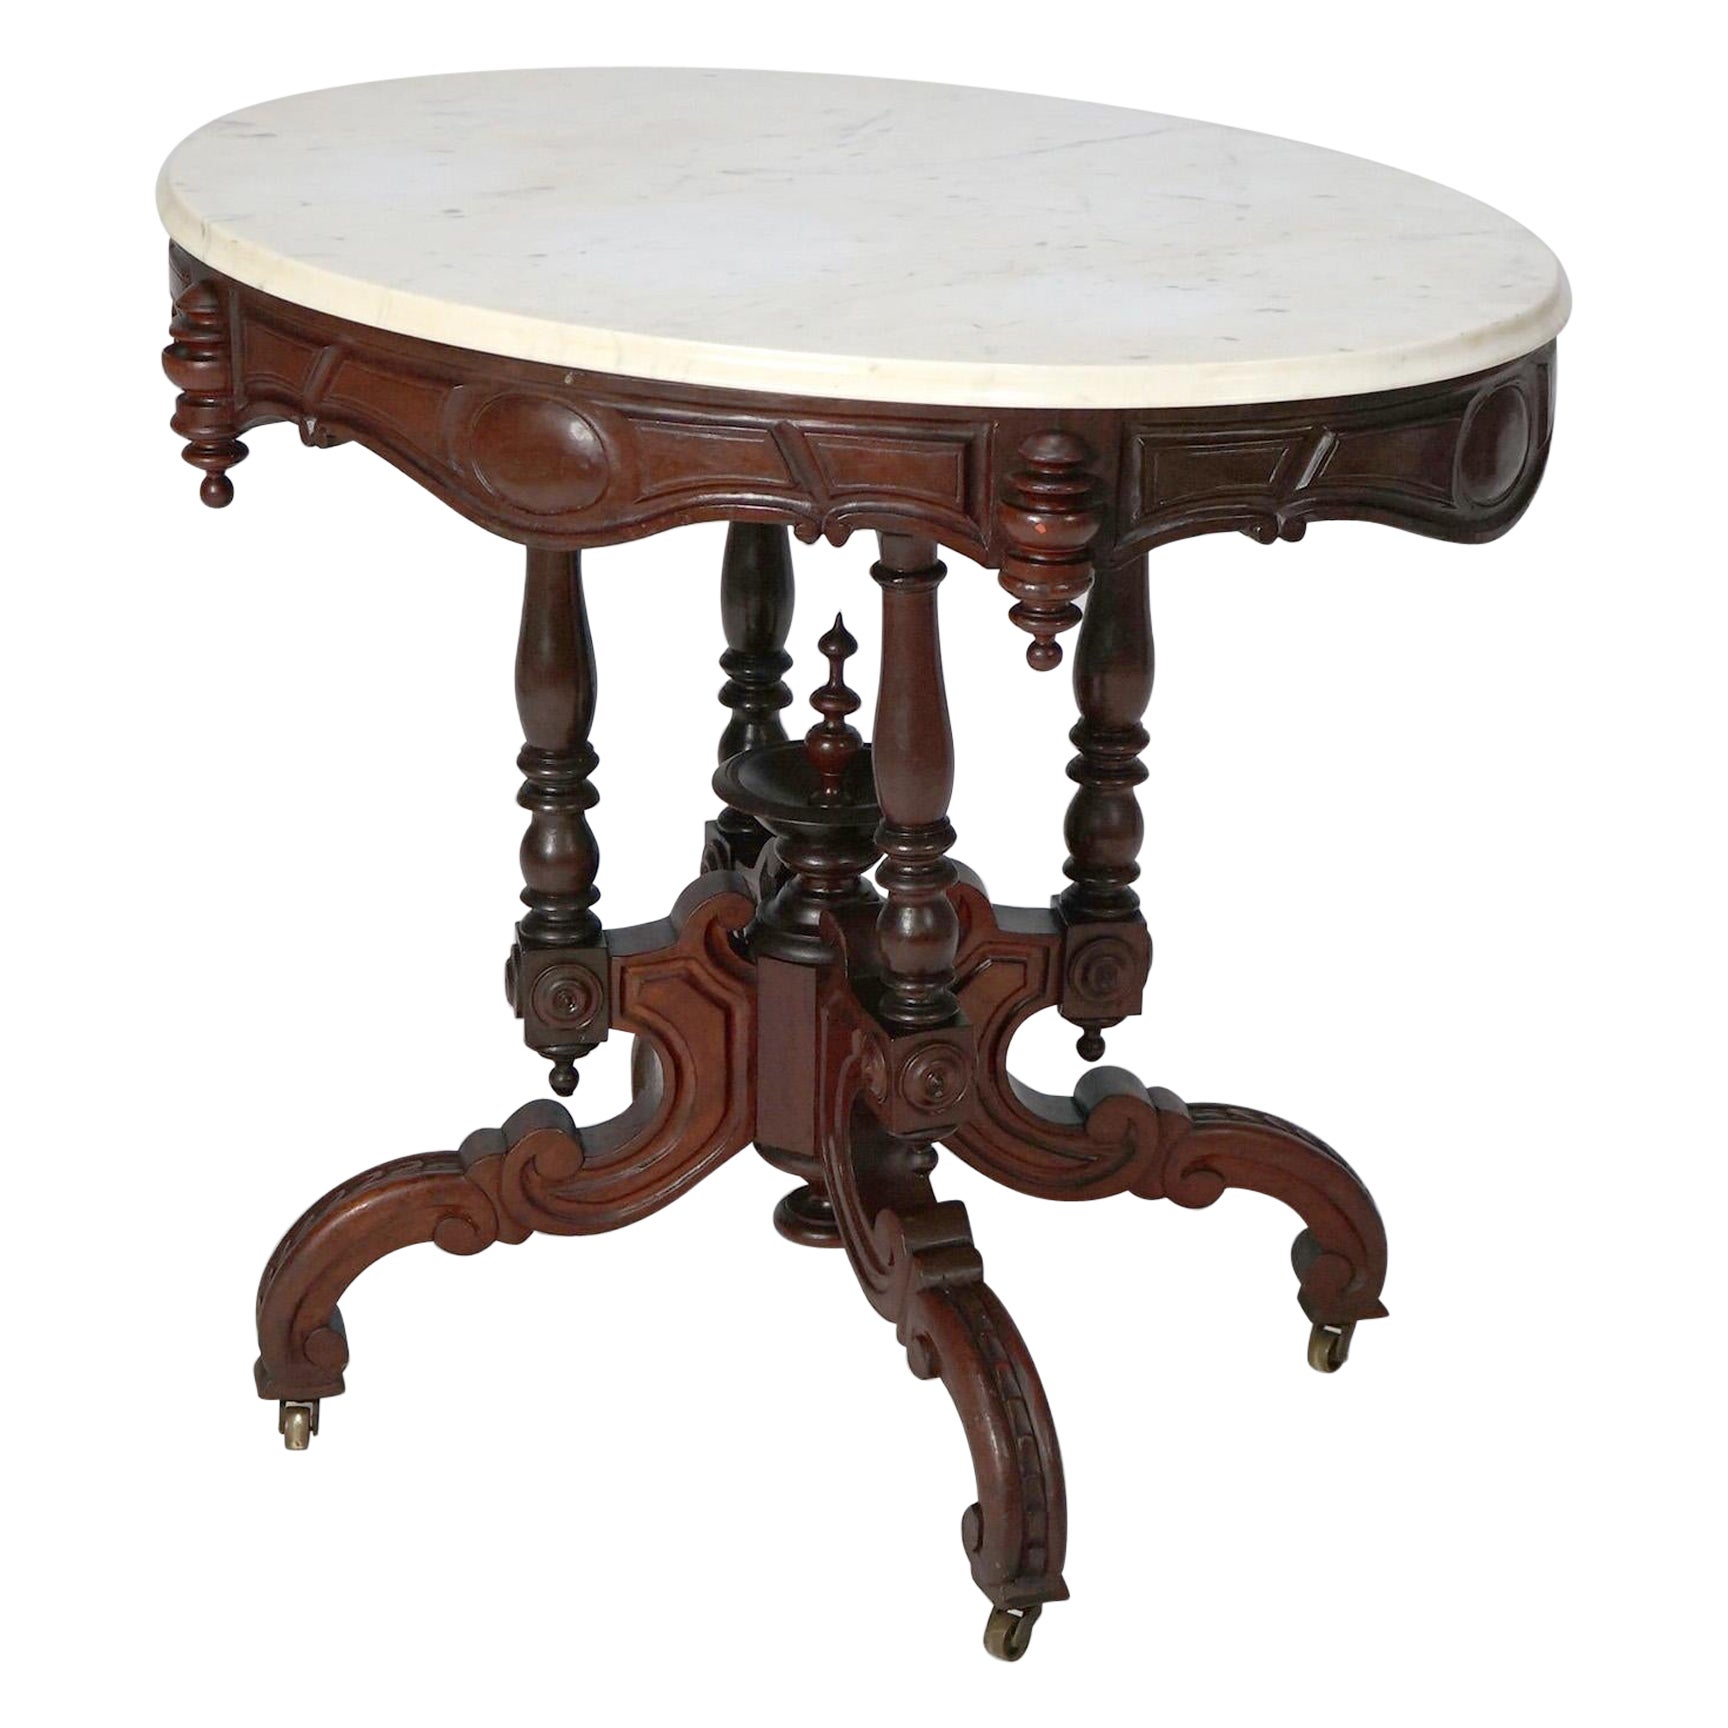 Antique Renaissance Revival Brooks Walnut Oval Marble Top Parlor Table c1890